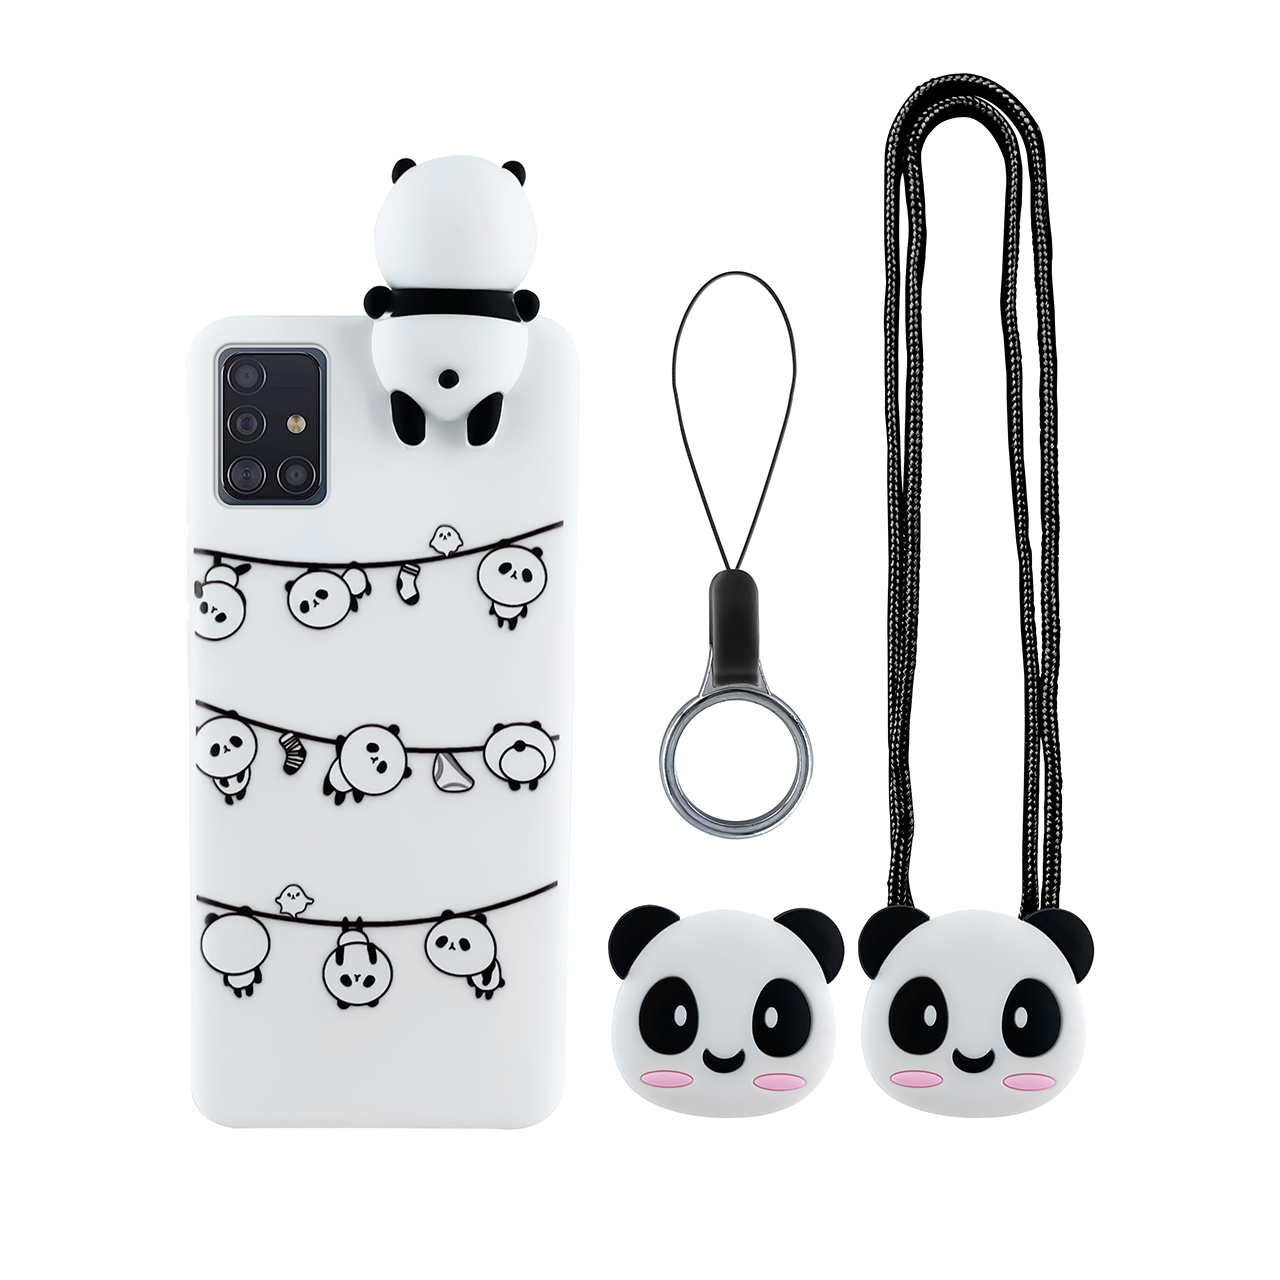 کاور دکین مدل Armon طرح Panda مناسب برای گوشی موبایل سامسونگ Galaxy A51 به همراه بند و آویز و پایه نگهدارنده